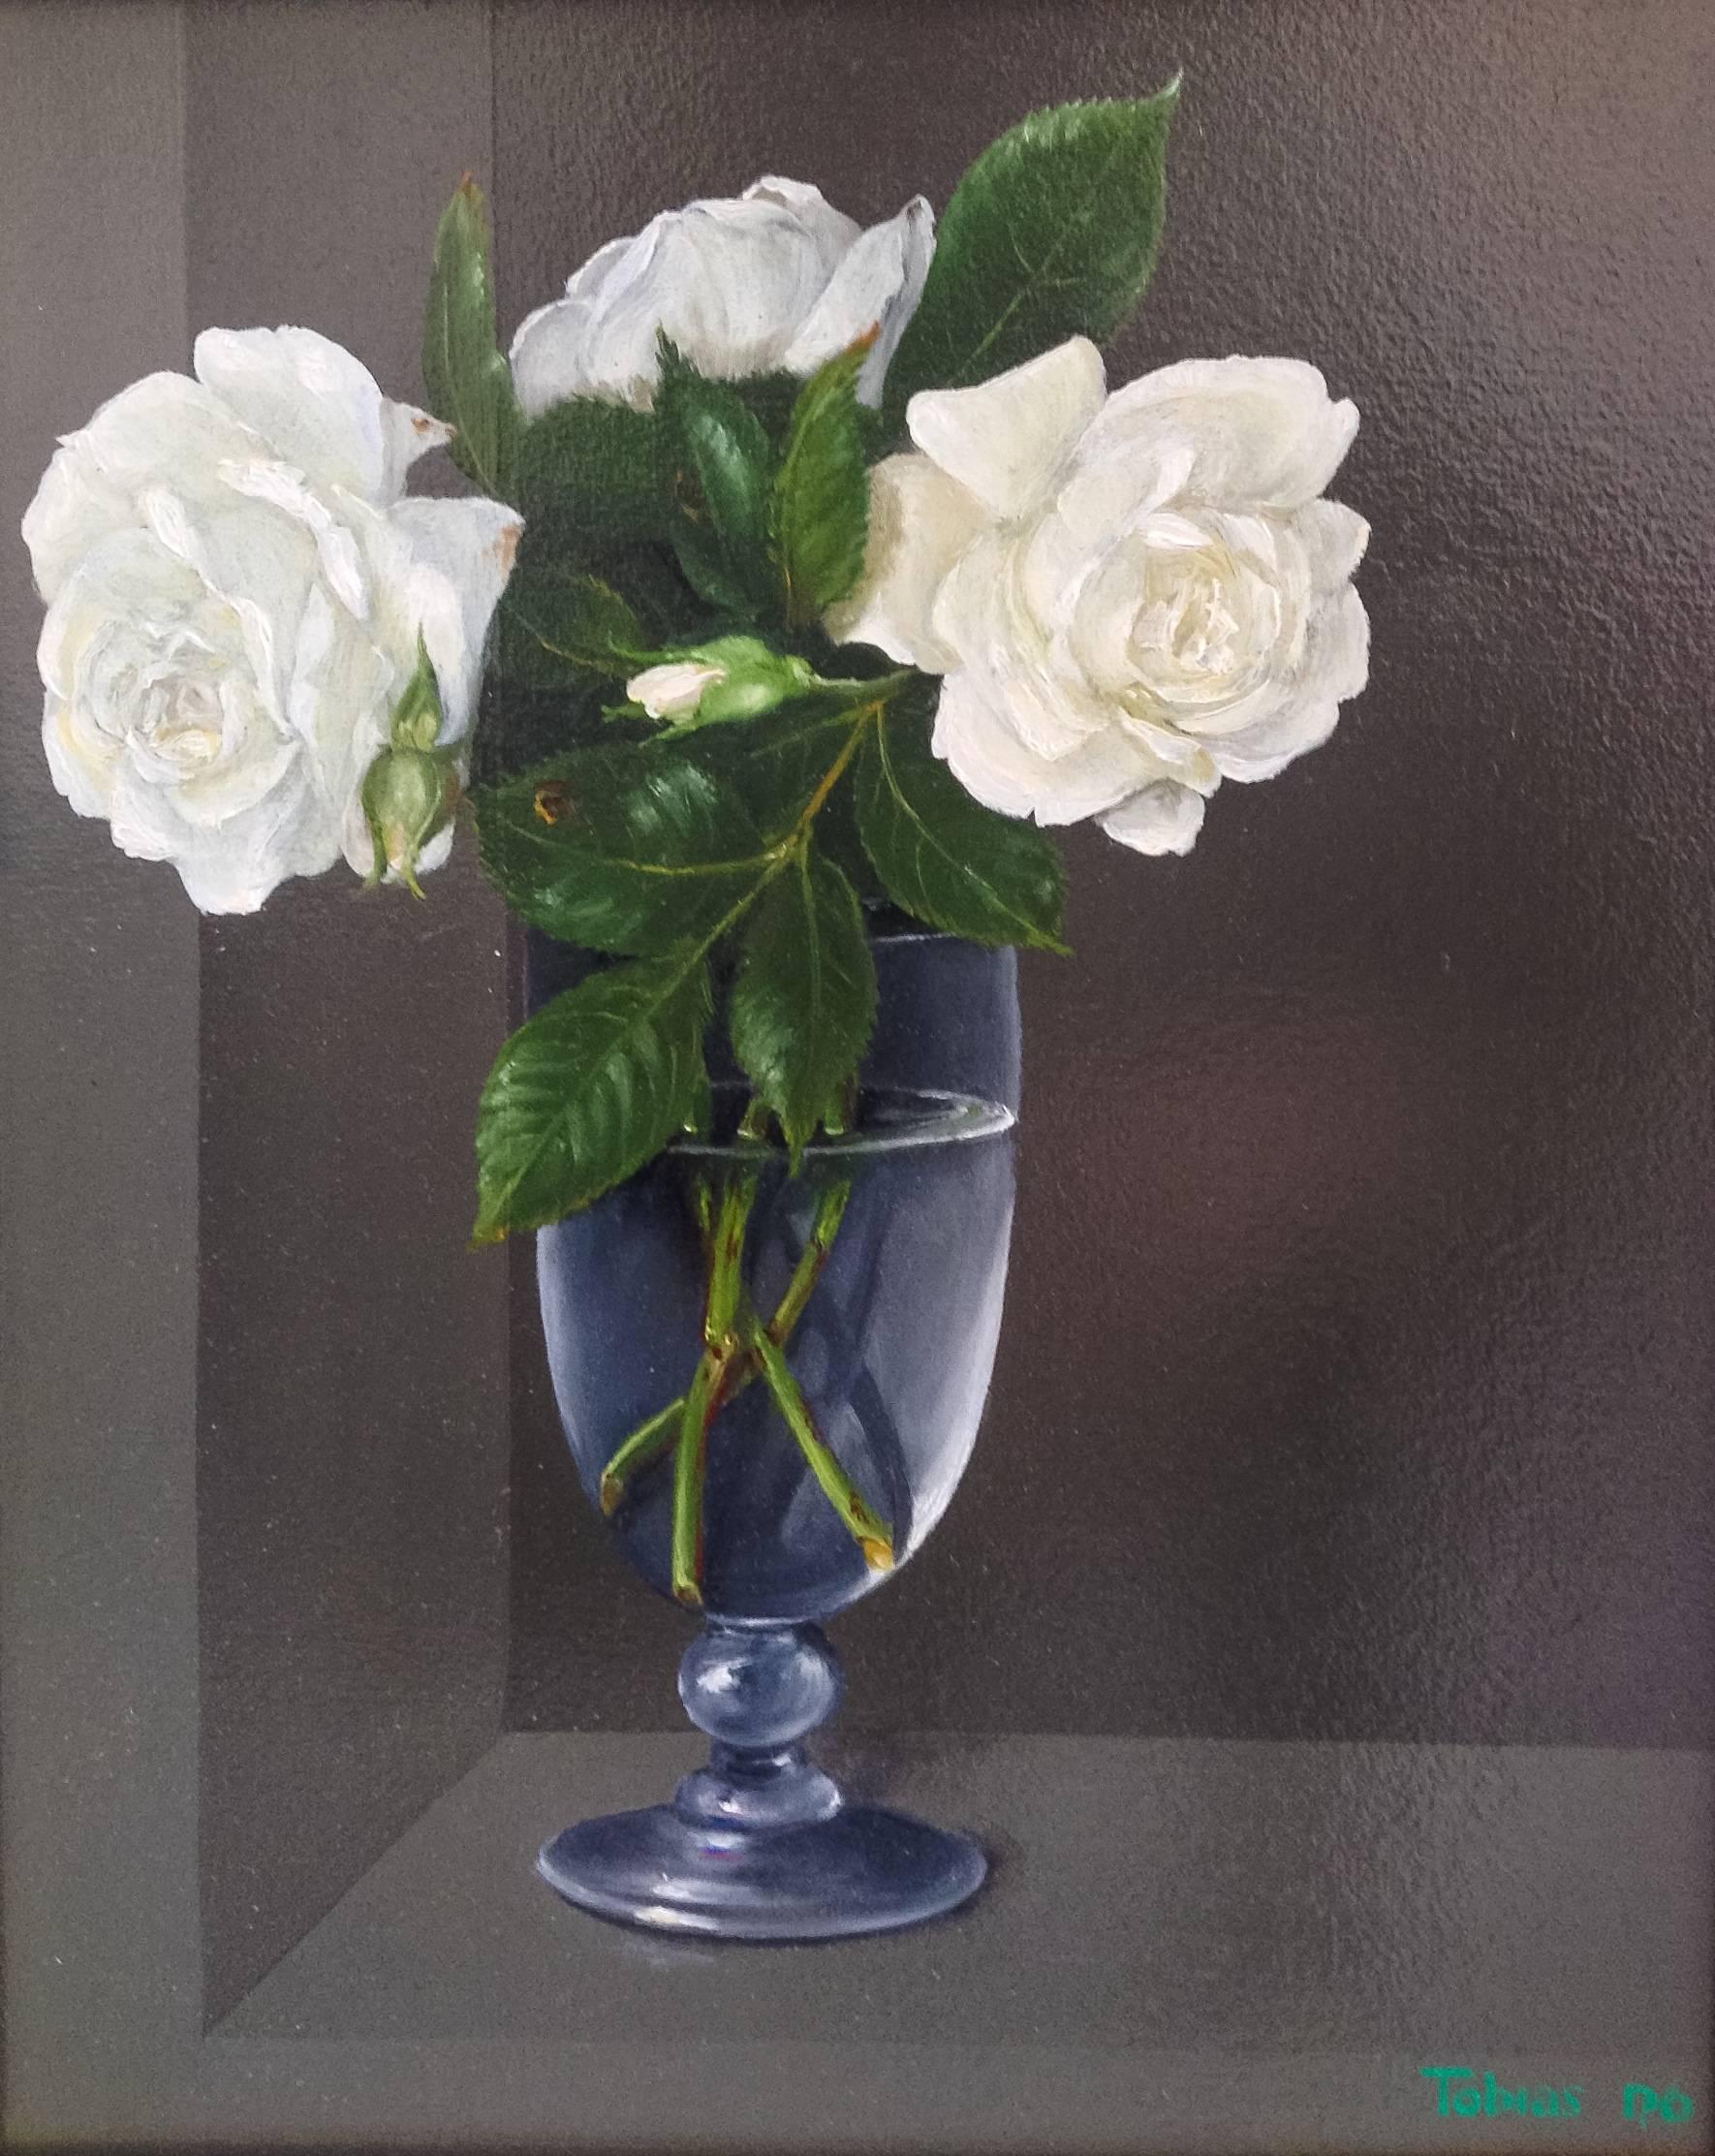 Roses blanches dans un verre - Nature morte réaliste originale - Art contemporain